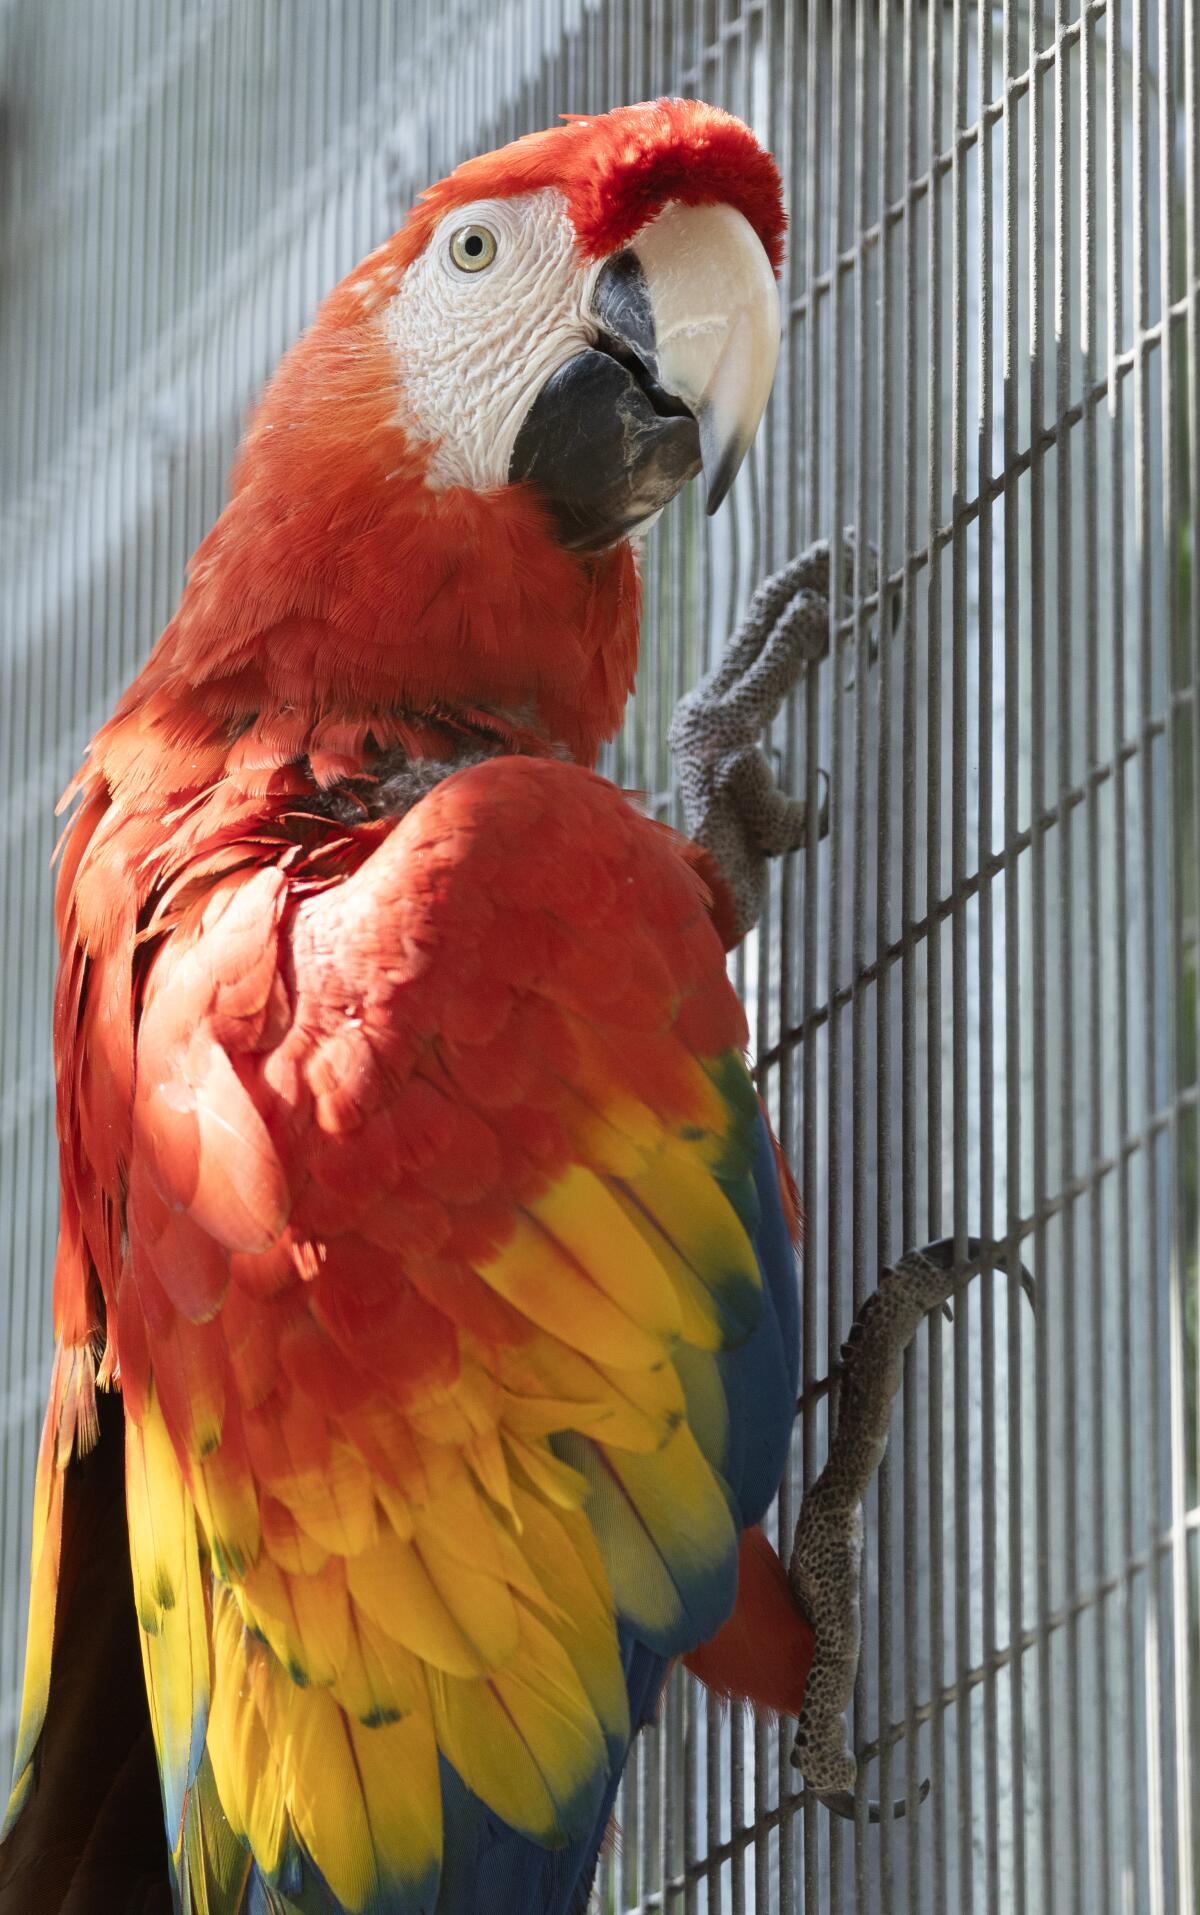 A bird hangs onto a cage.